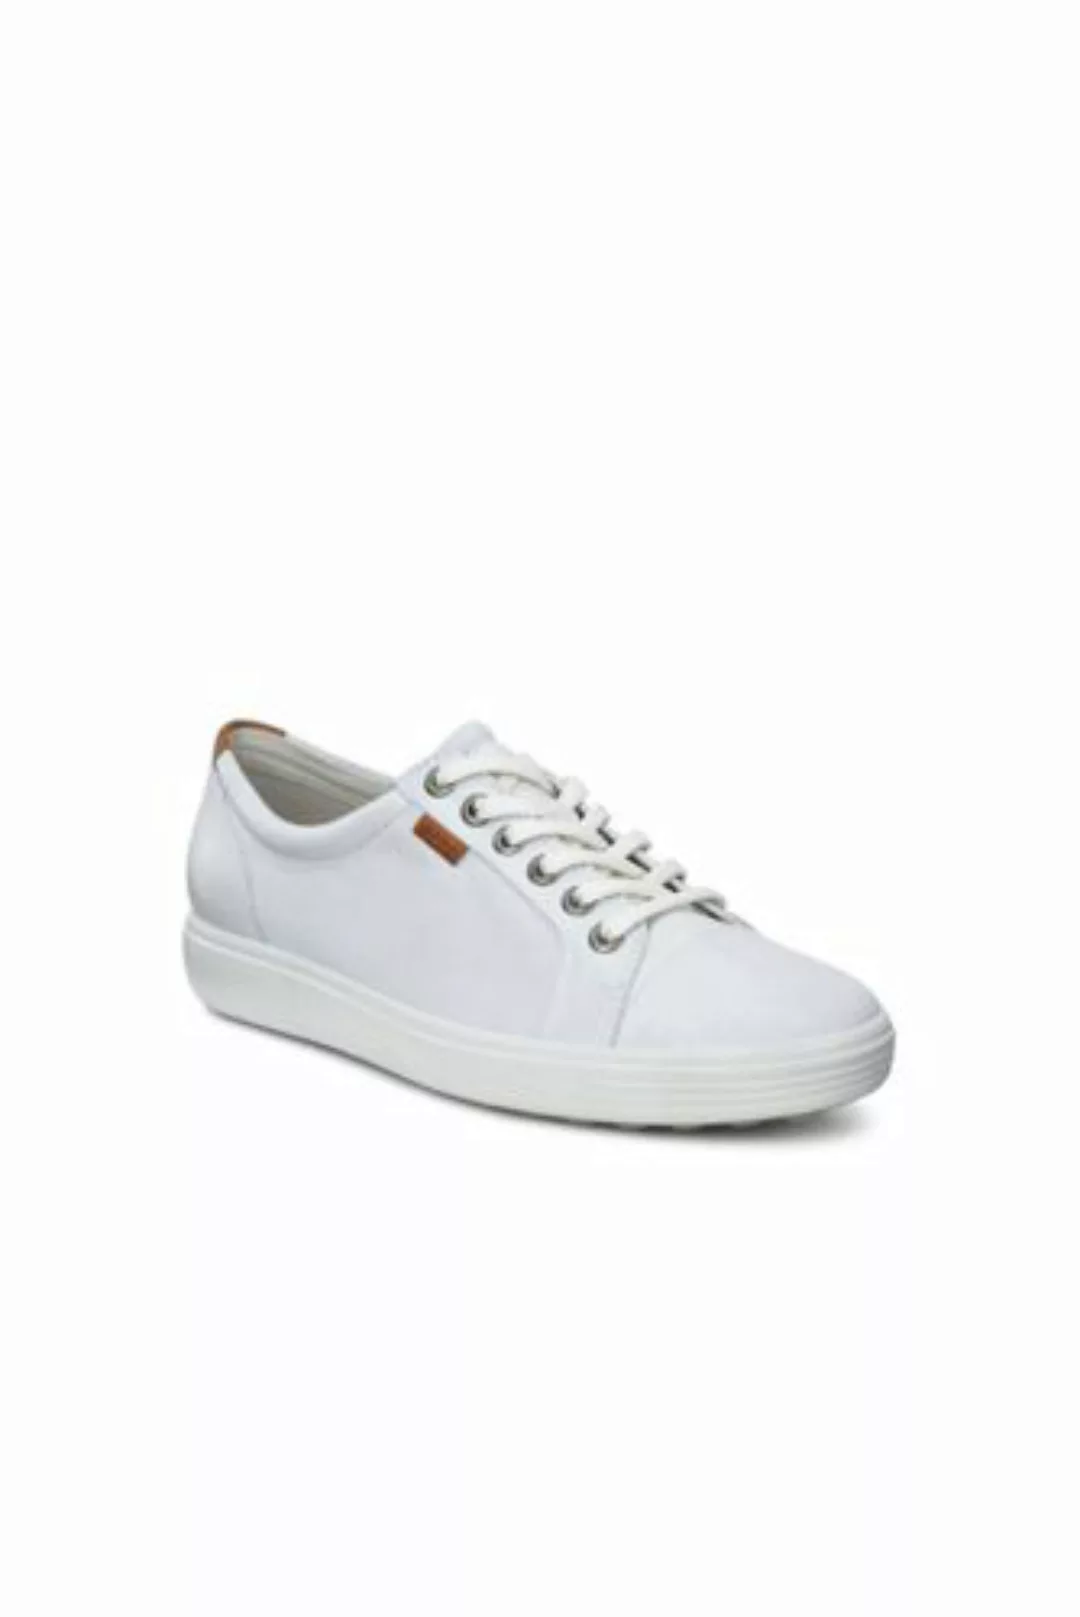 ECCO Sneaker SOFT 7, Damen, Größe: 40 Normal, Weiß, Leder, by Lands' End, W günstig online kaufen